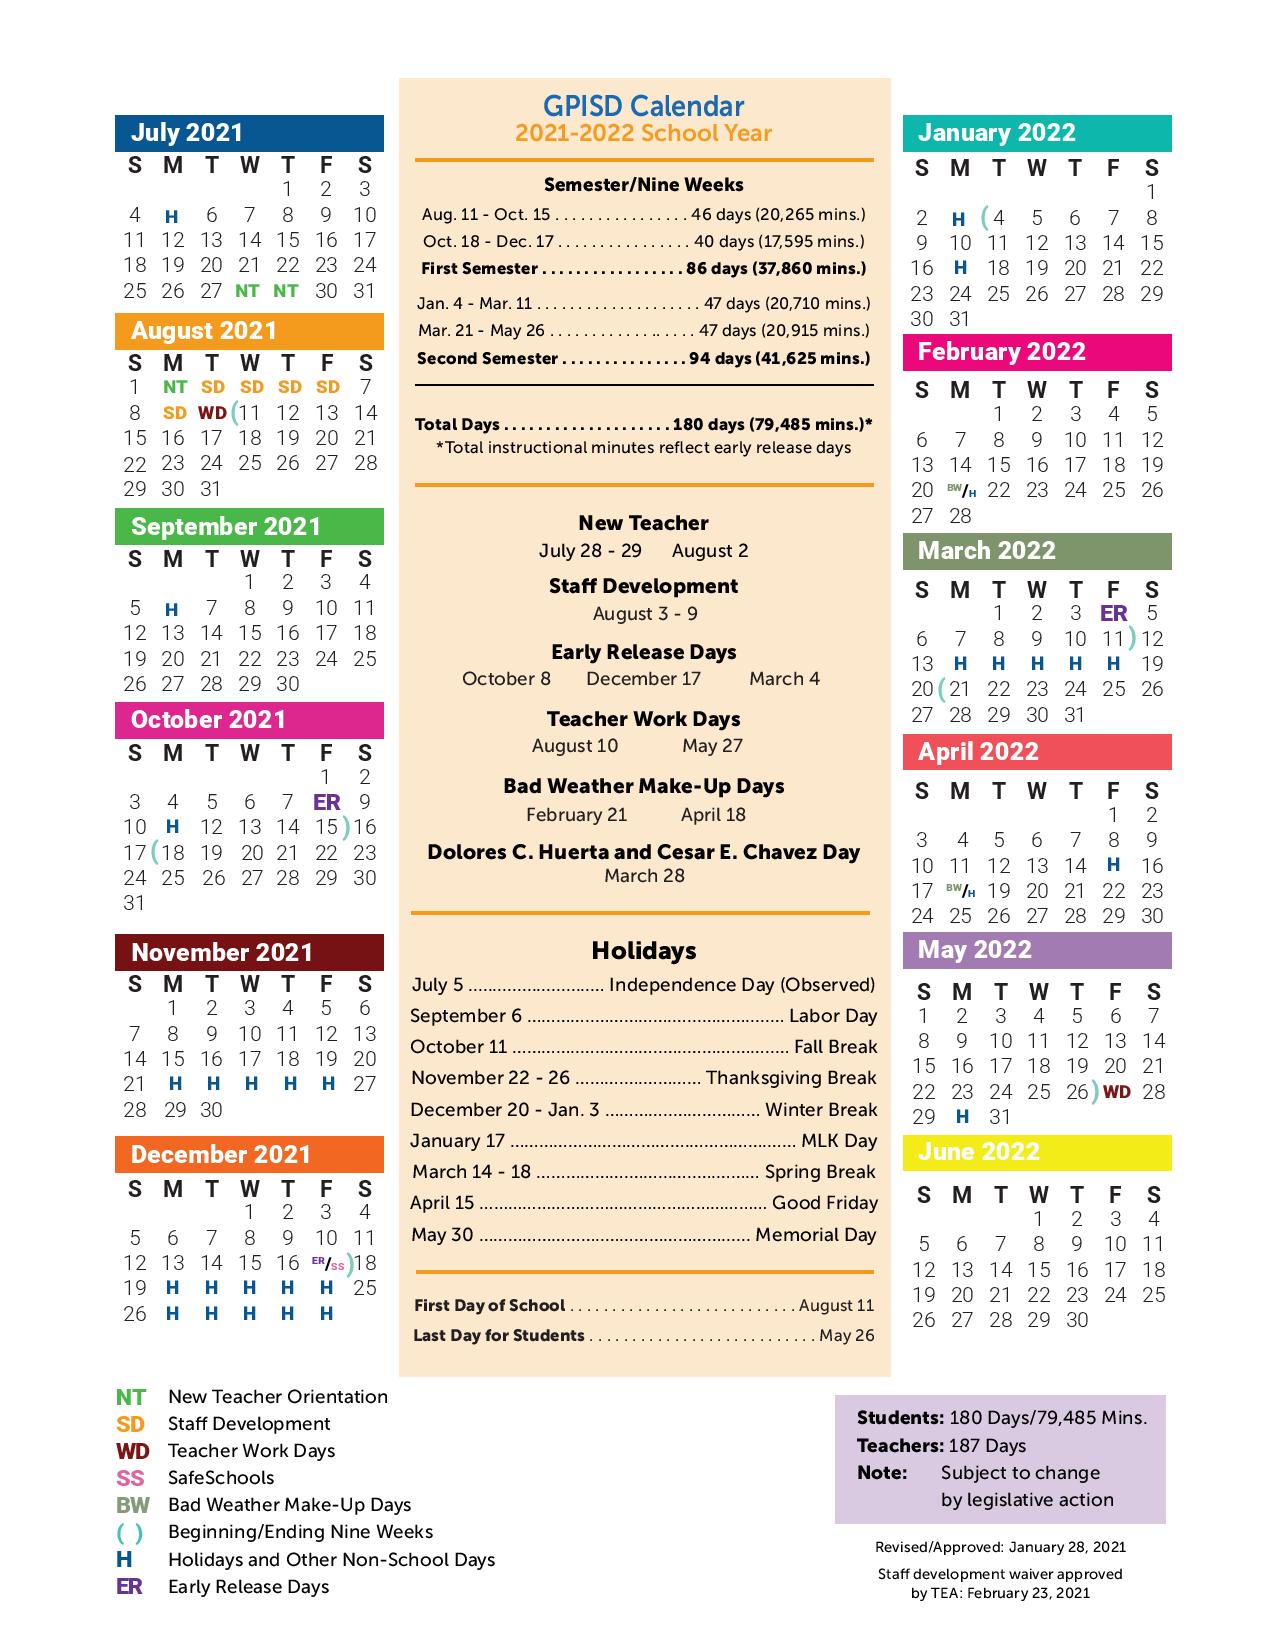 Disd Calendar 2022 2023 Grand Prairie Independent School District Calendar 2021-2022